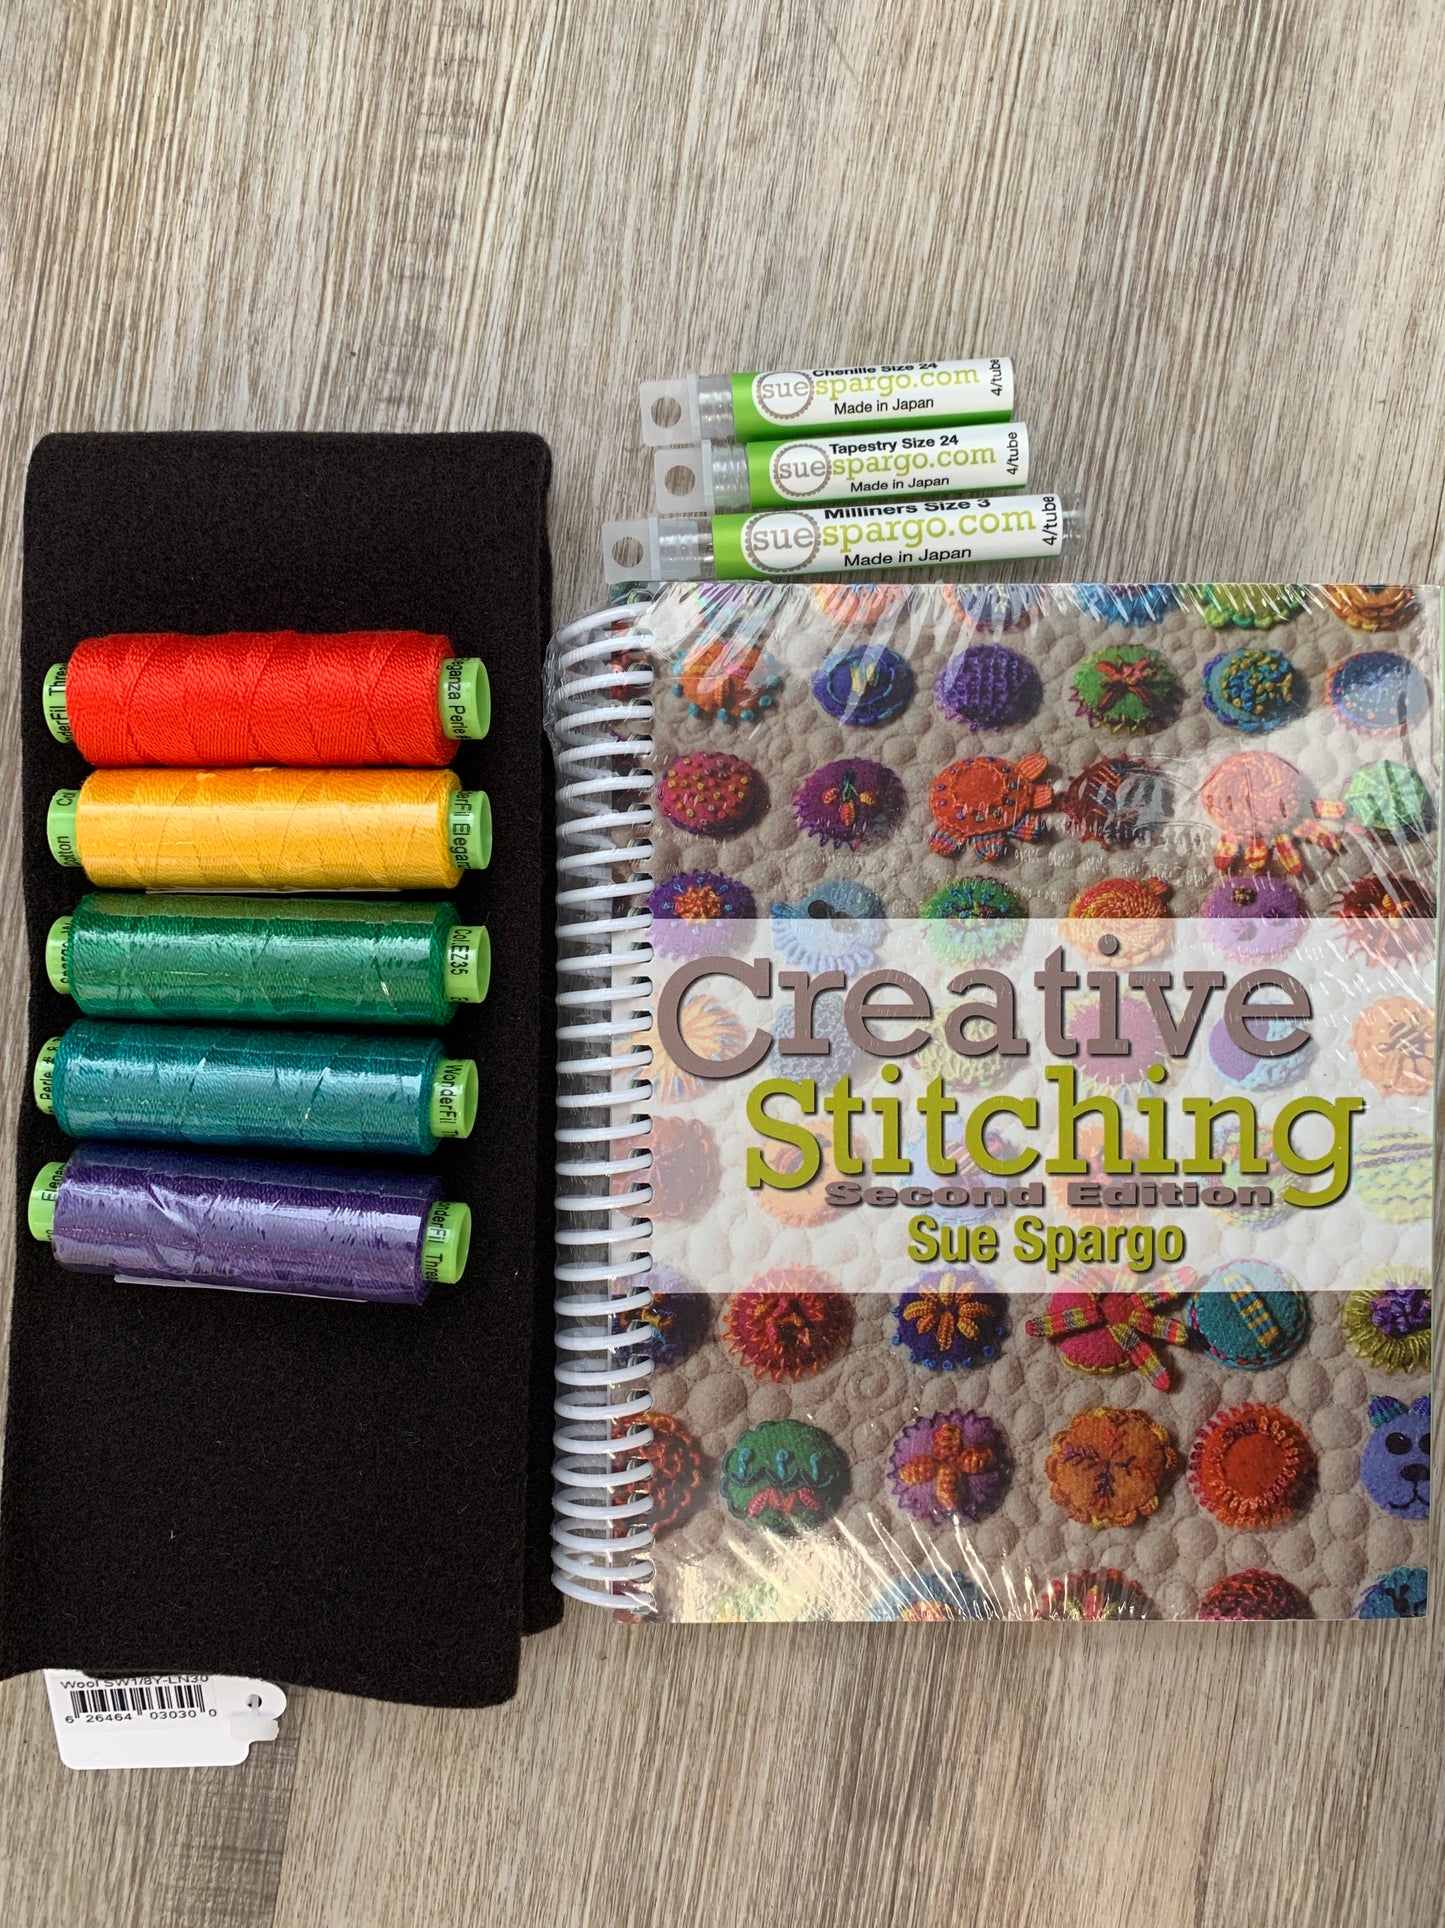 Stitch a Day Along Kit - Creative Stitching Stitch of the Day